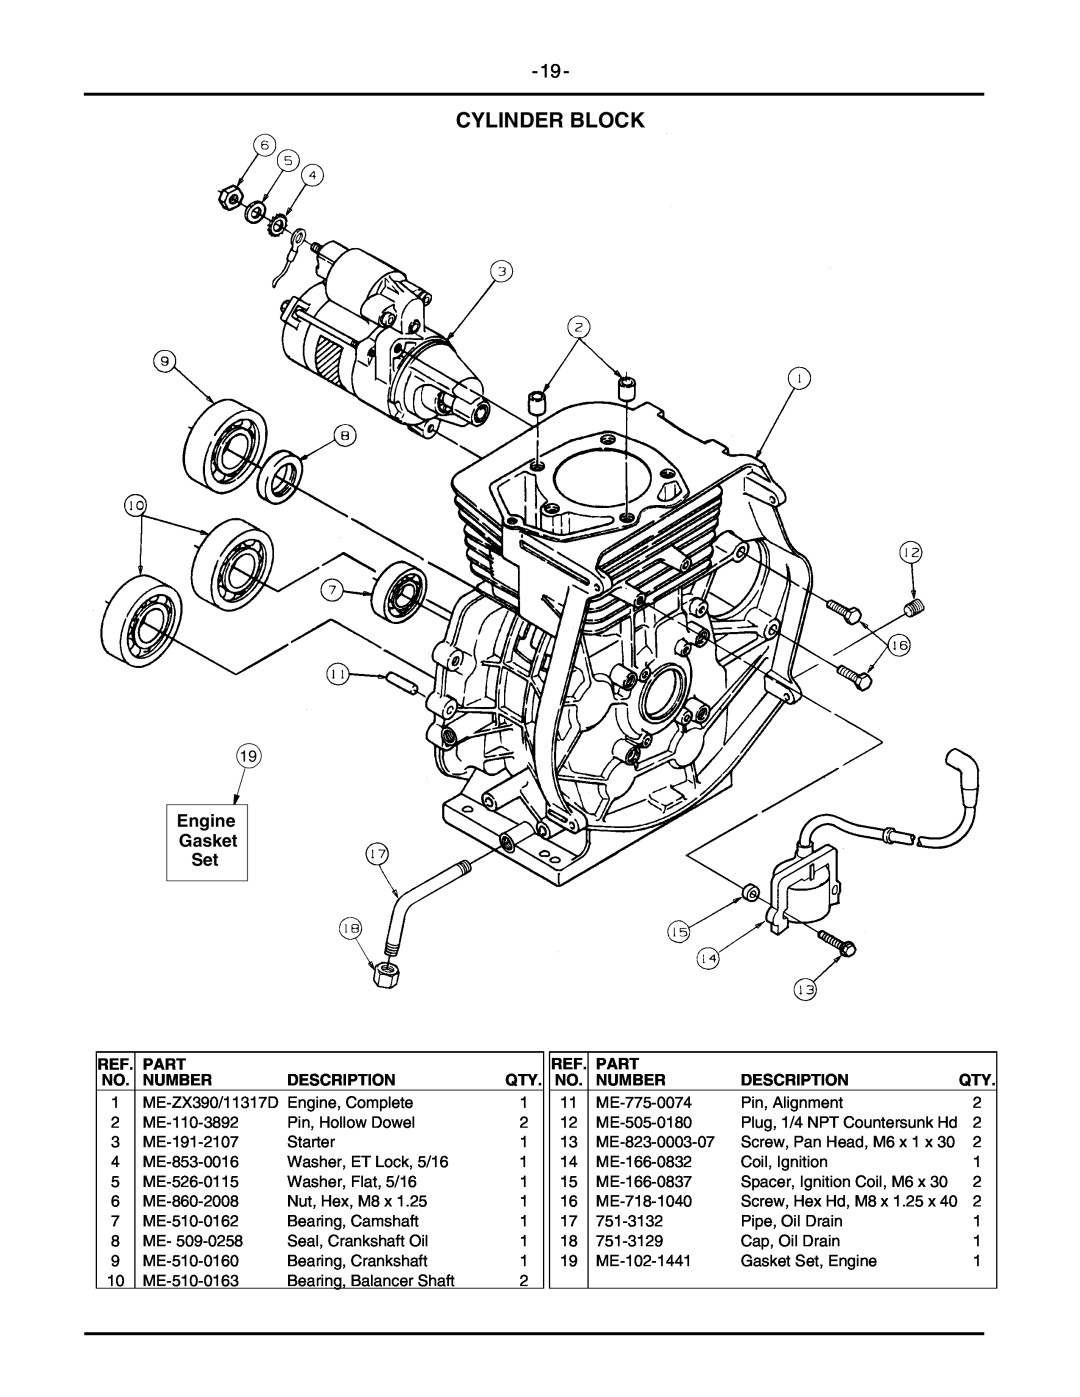 Cub Cadet 2146 manual Cylinder Block, Engine Gasket Set, Part, Number, Description 